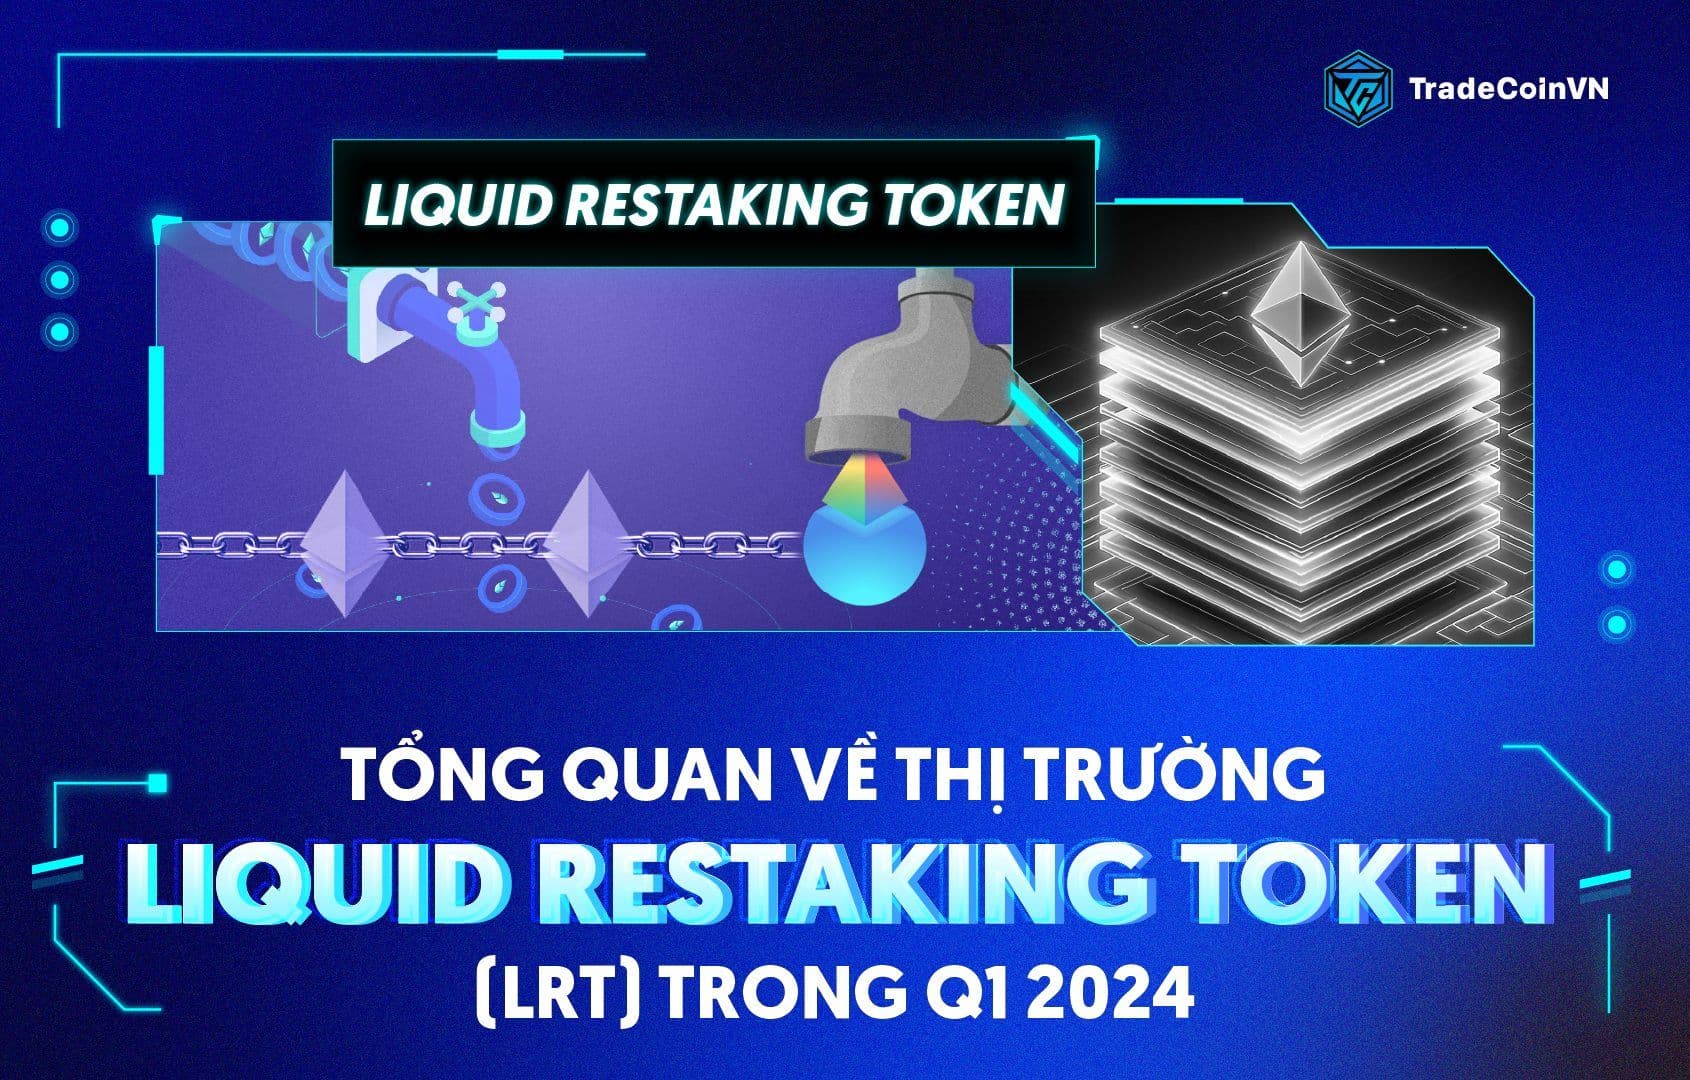 Tổng quan về thị trường Liquid Restaking Token (LRT) trong Q1 2024